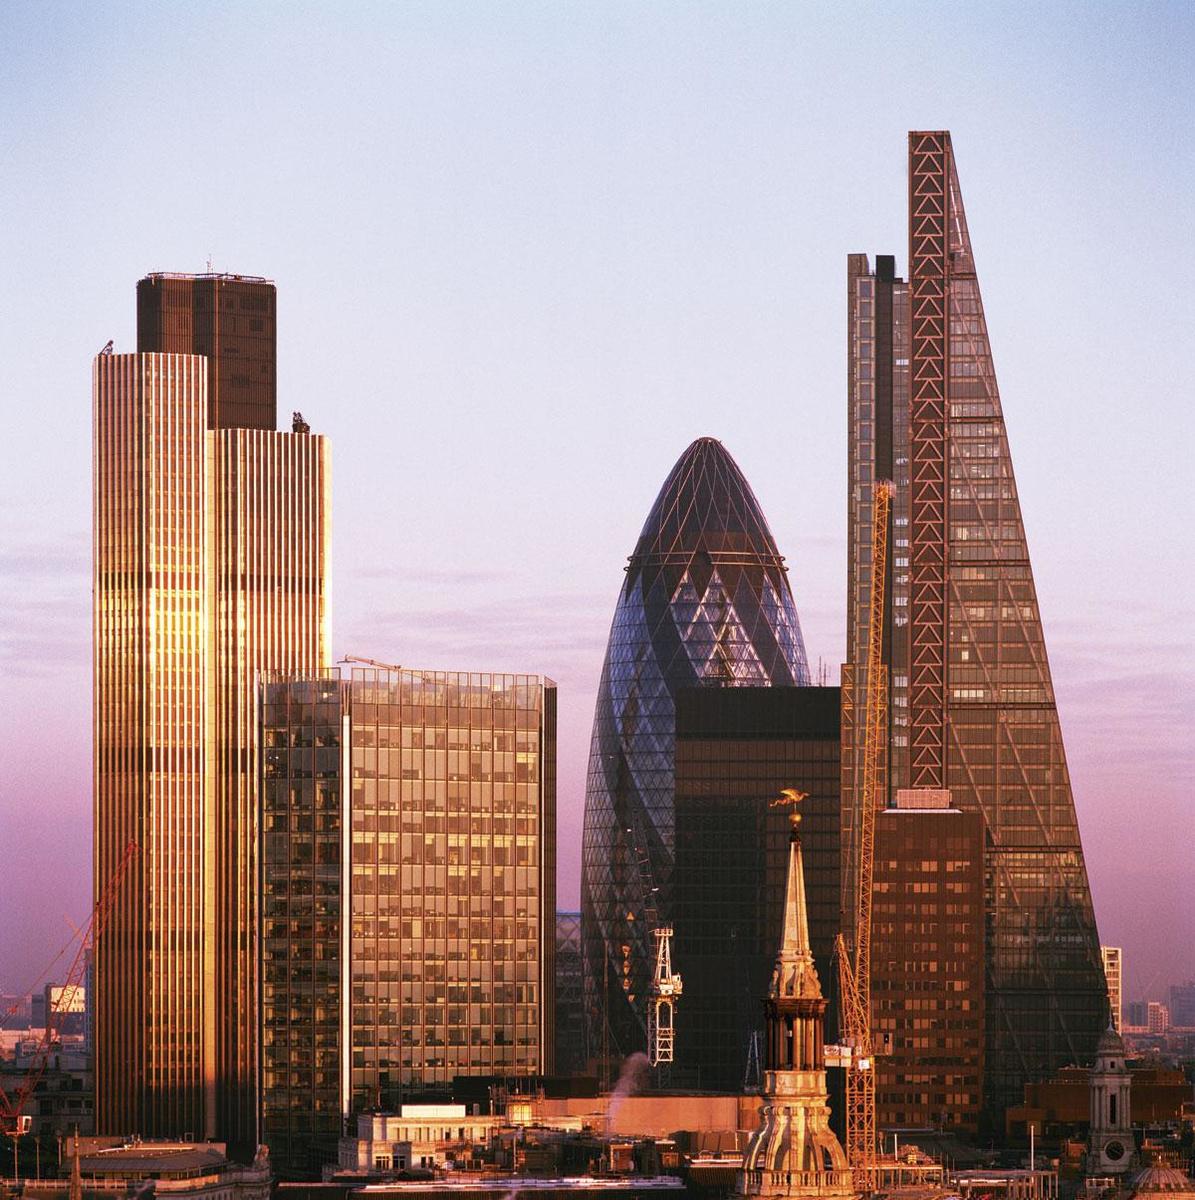 DE CITY Europa heeft niet de juiste mensen of voldoende kennis om de rol van Londen als financieel centrum over te nemen.